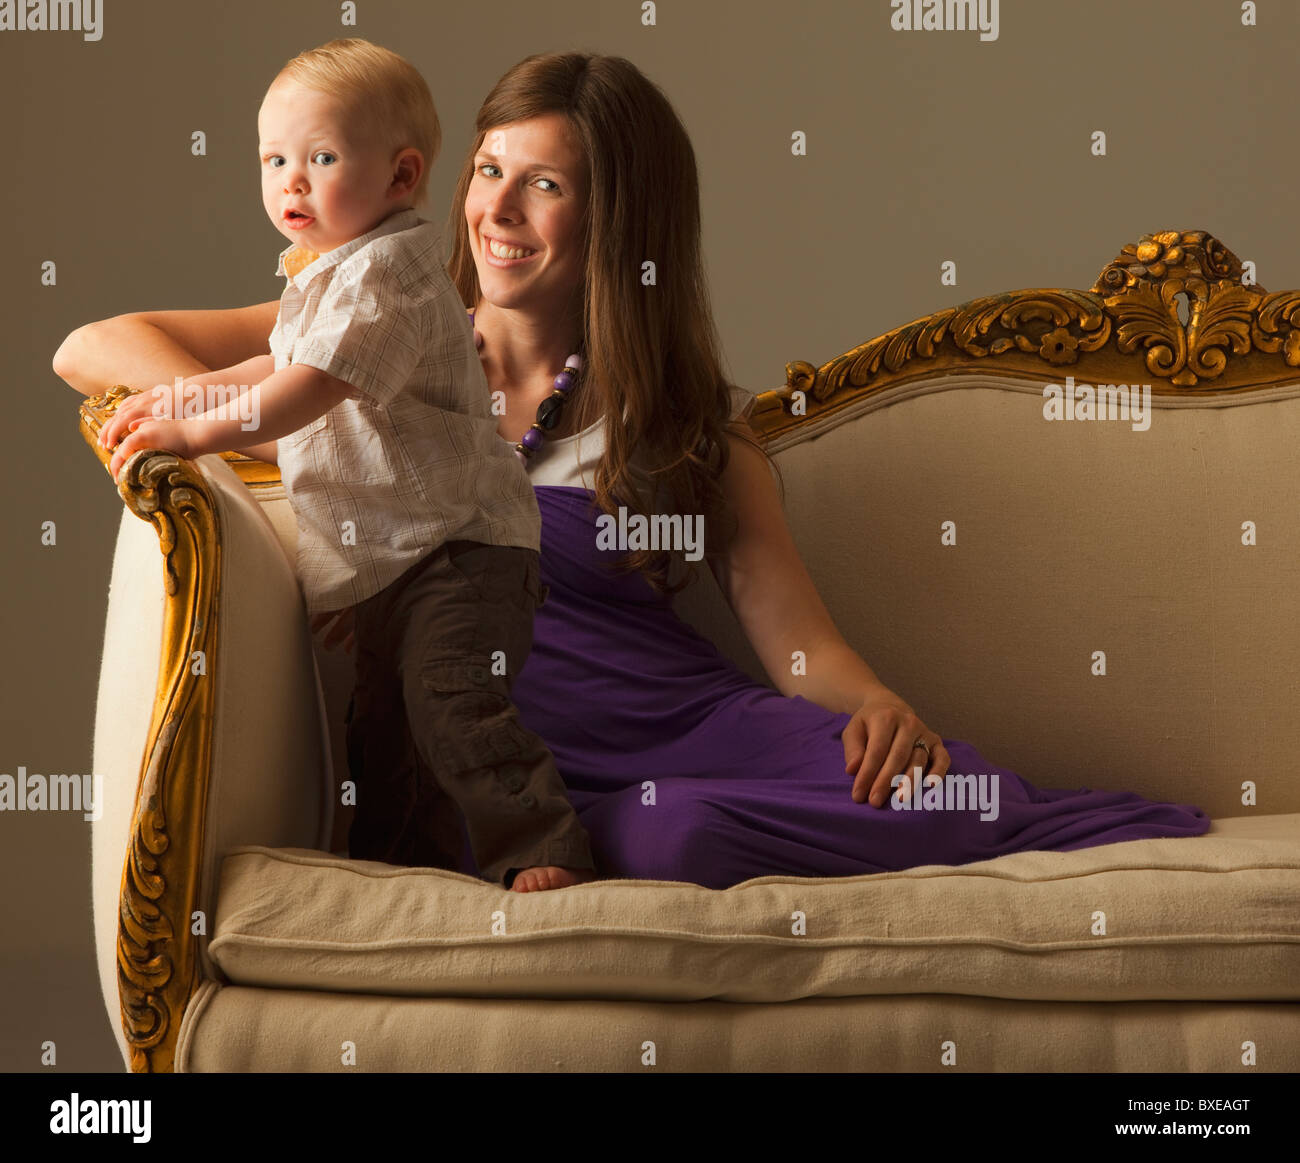 Femme et enfant assis sur un canapé Banque D'Images